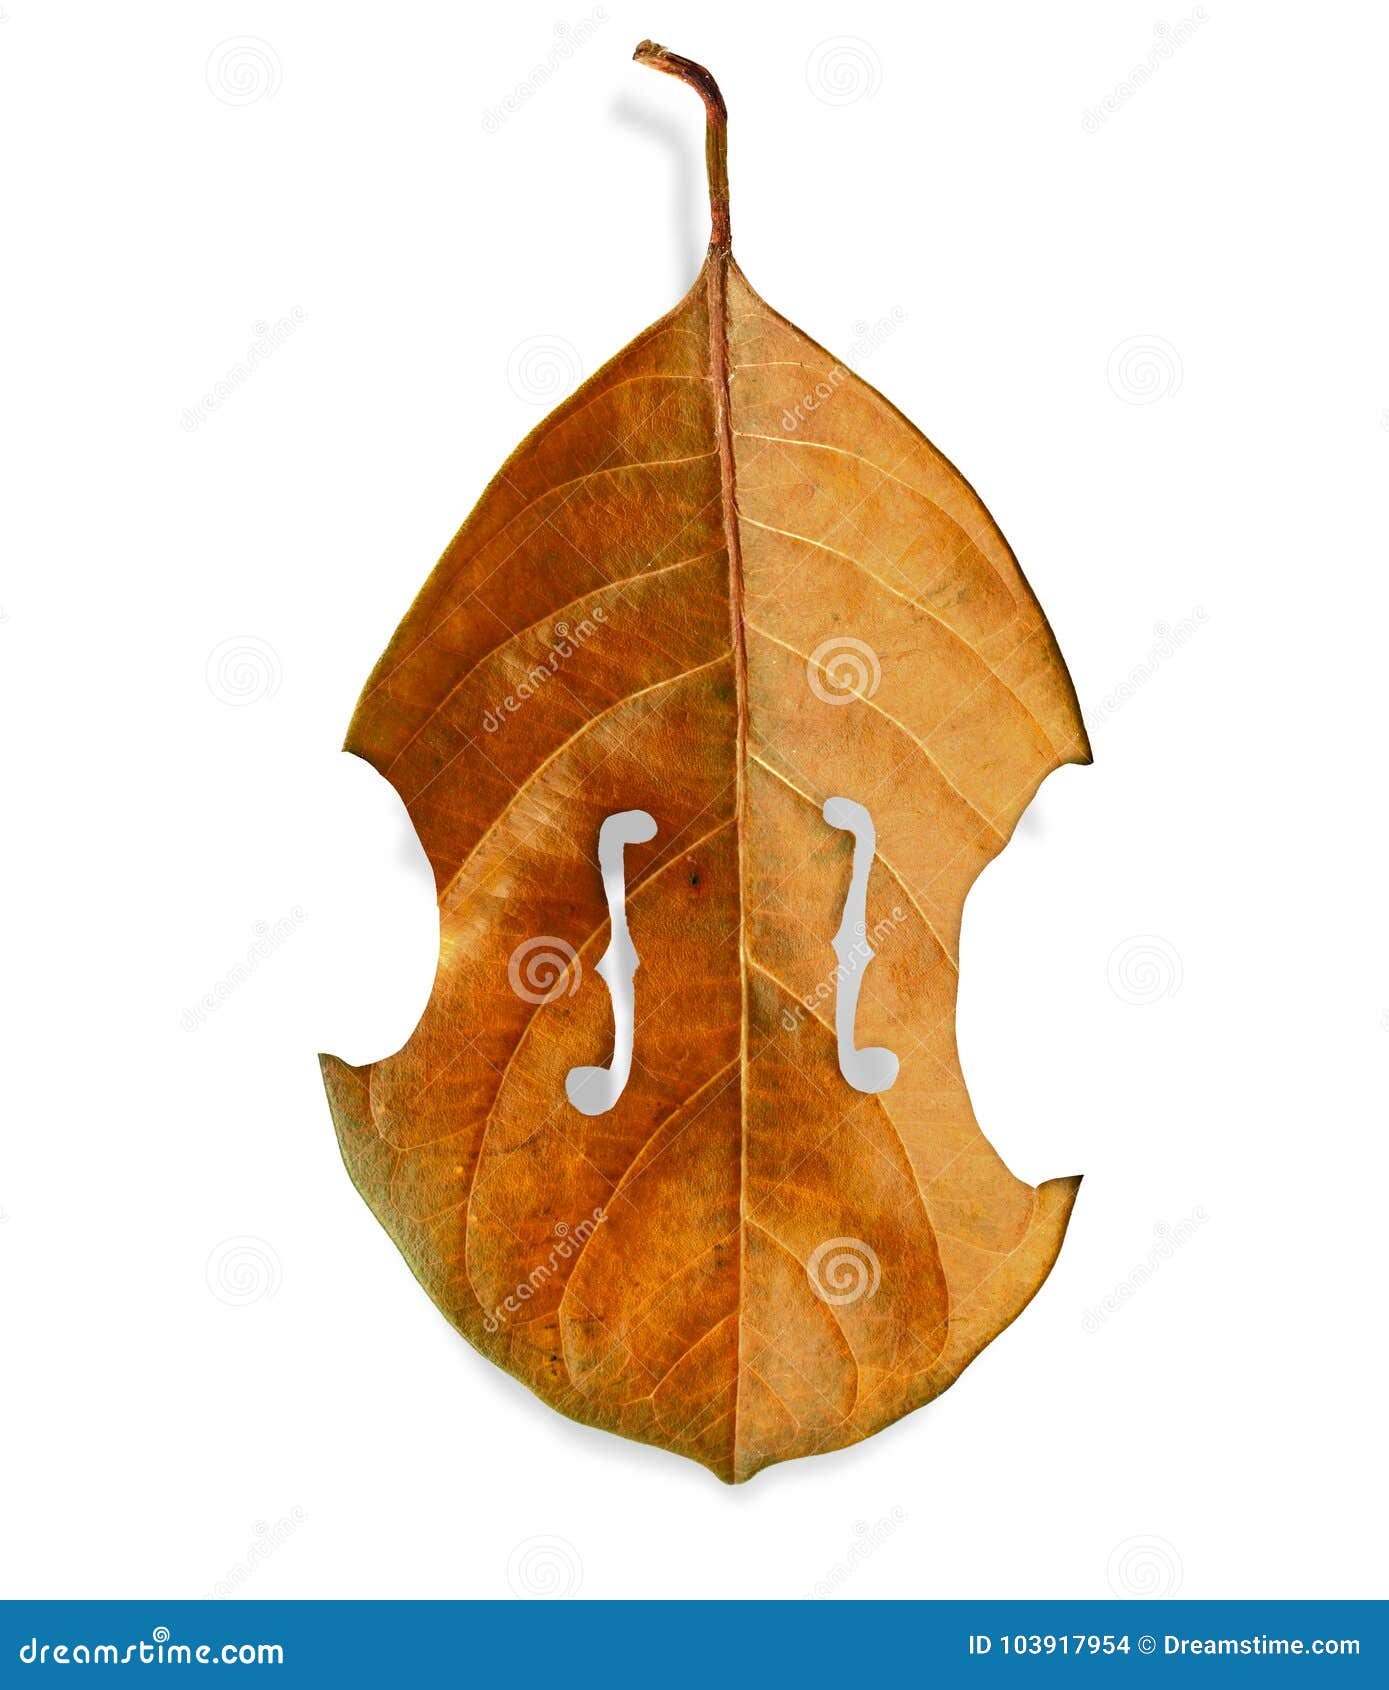 violin tree leaf